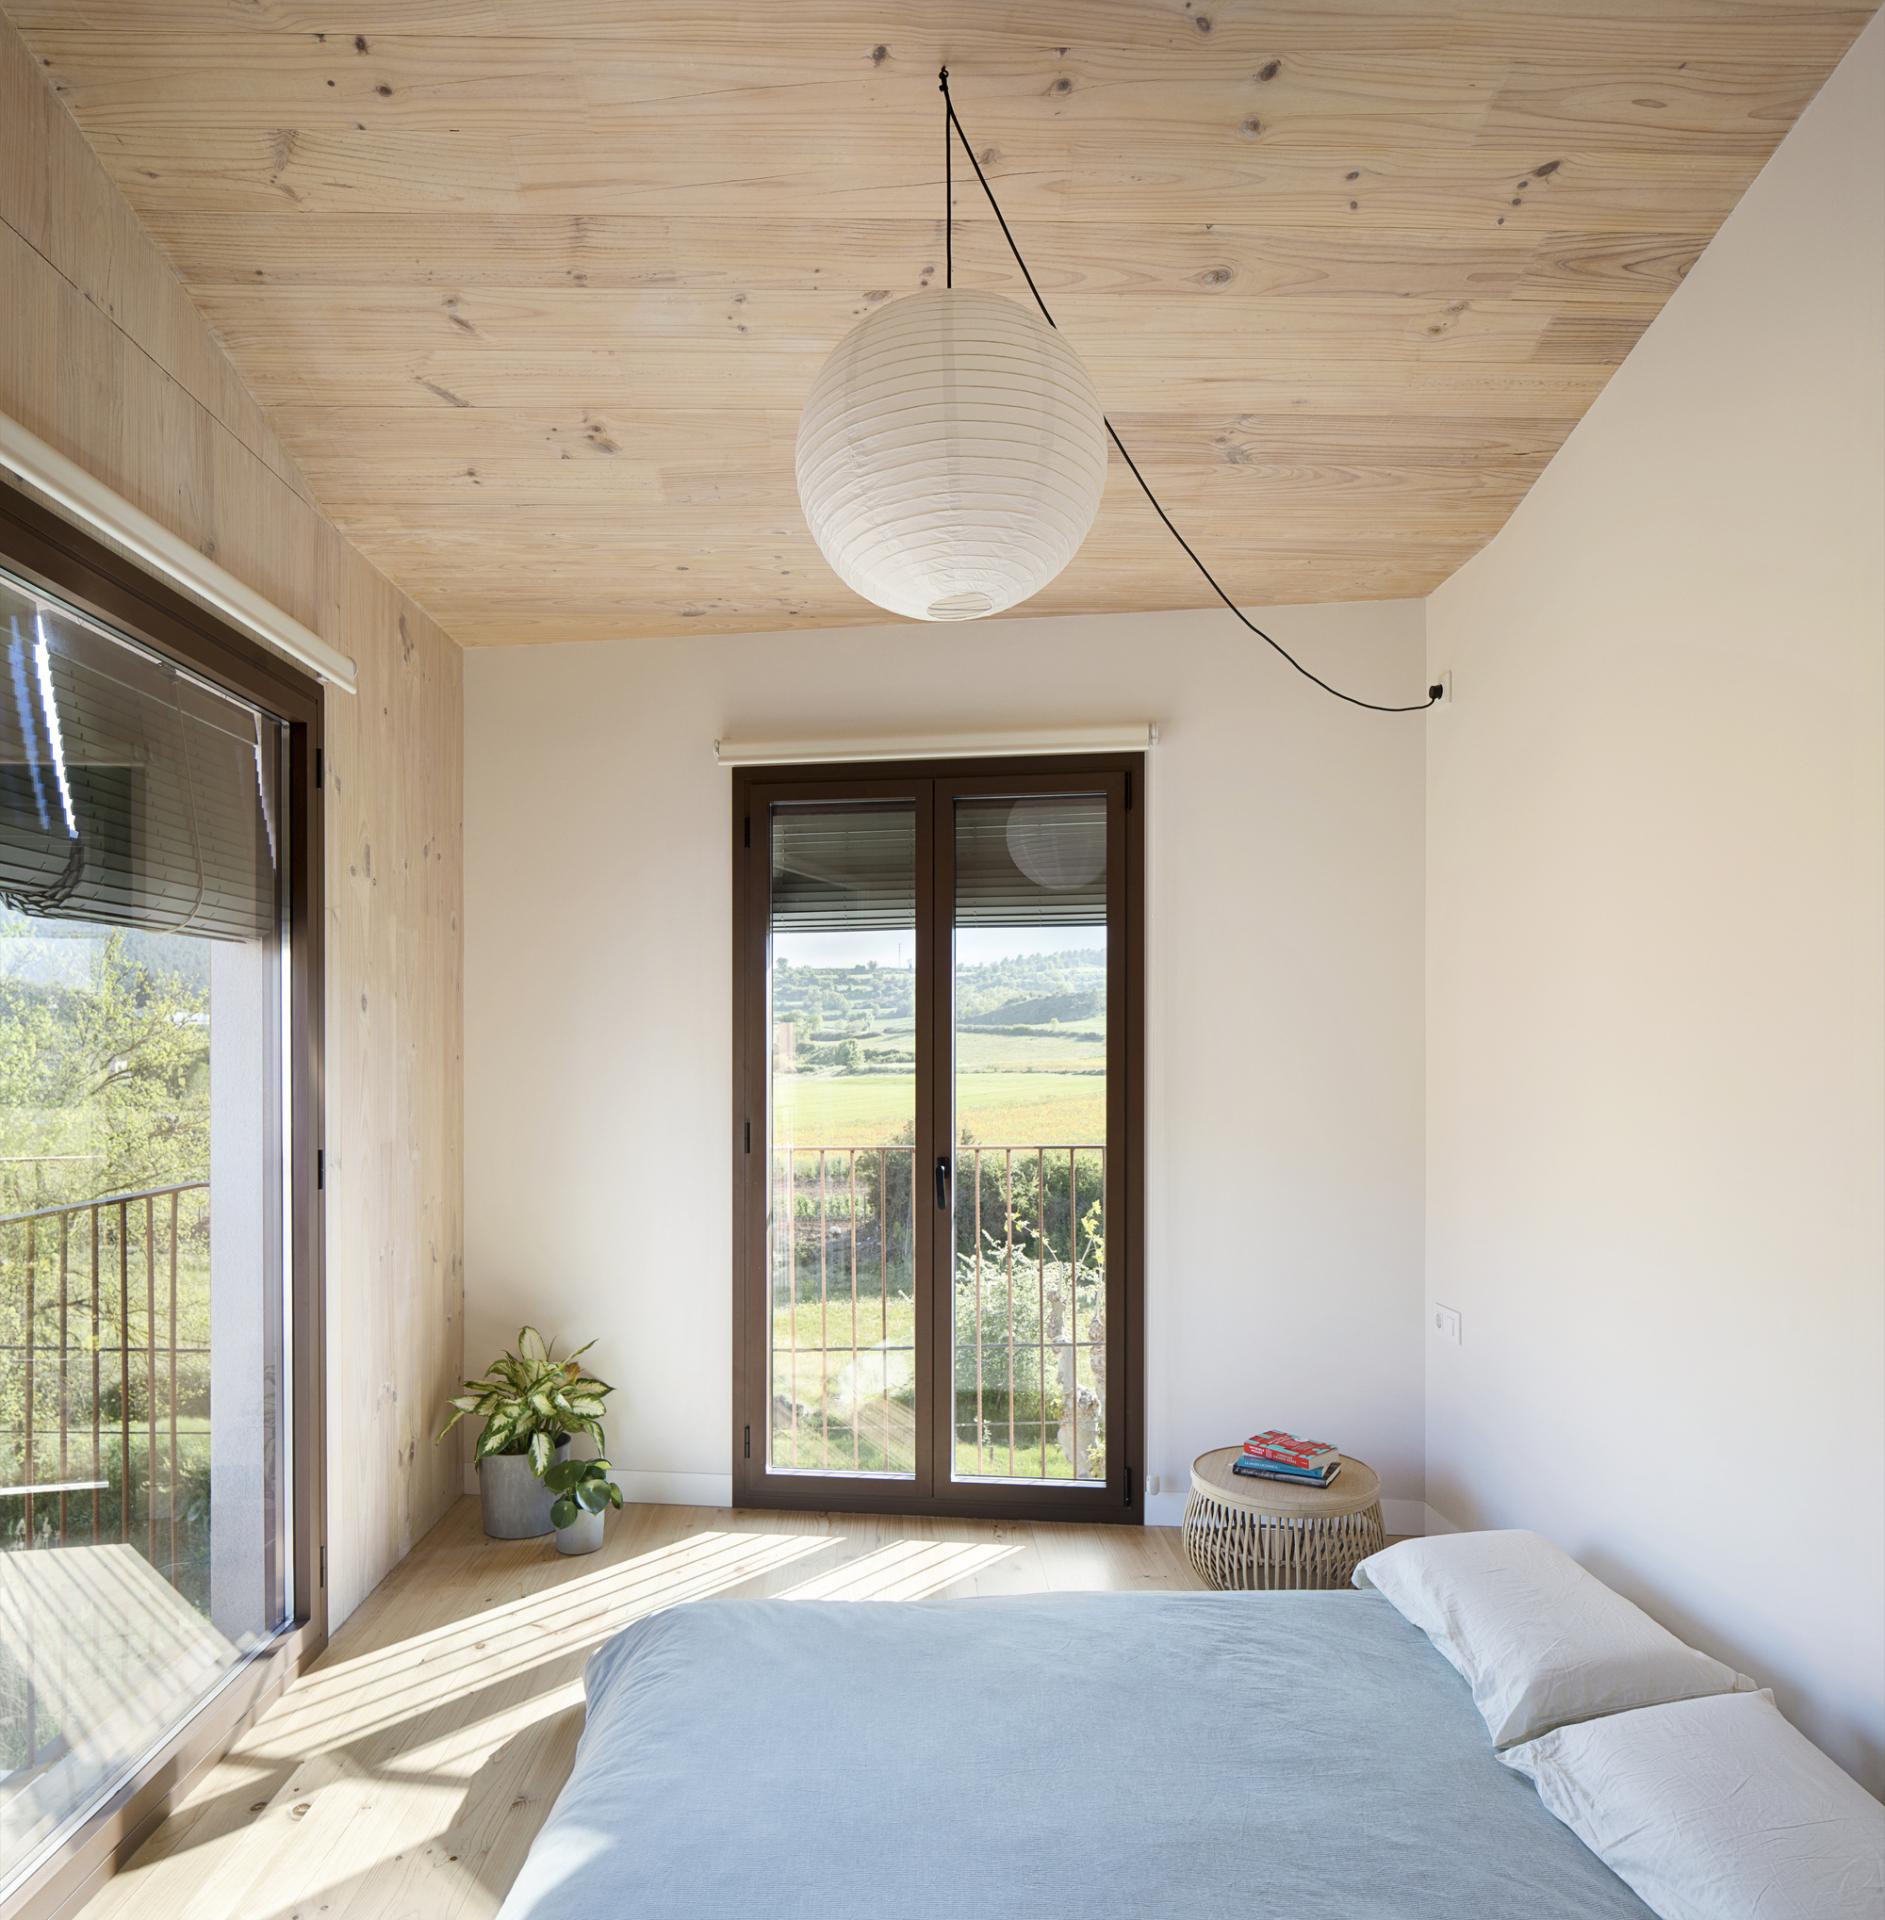 回歸田園生活美學，西班牙三層簡單家居構築多功能空間